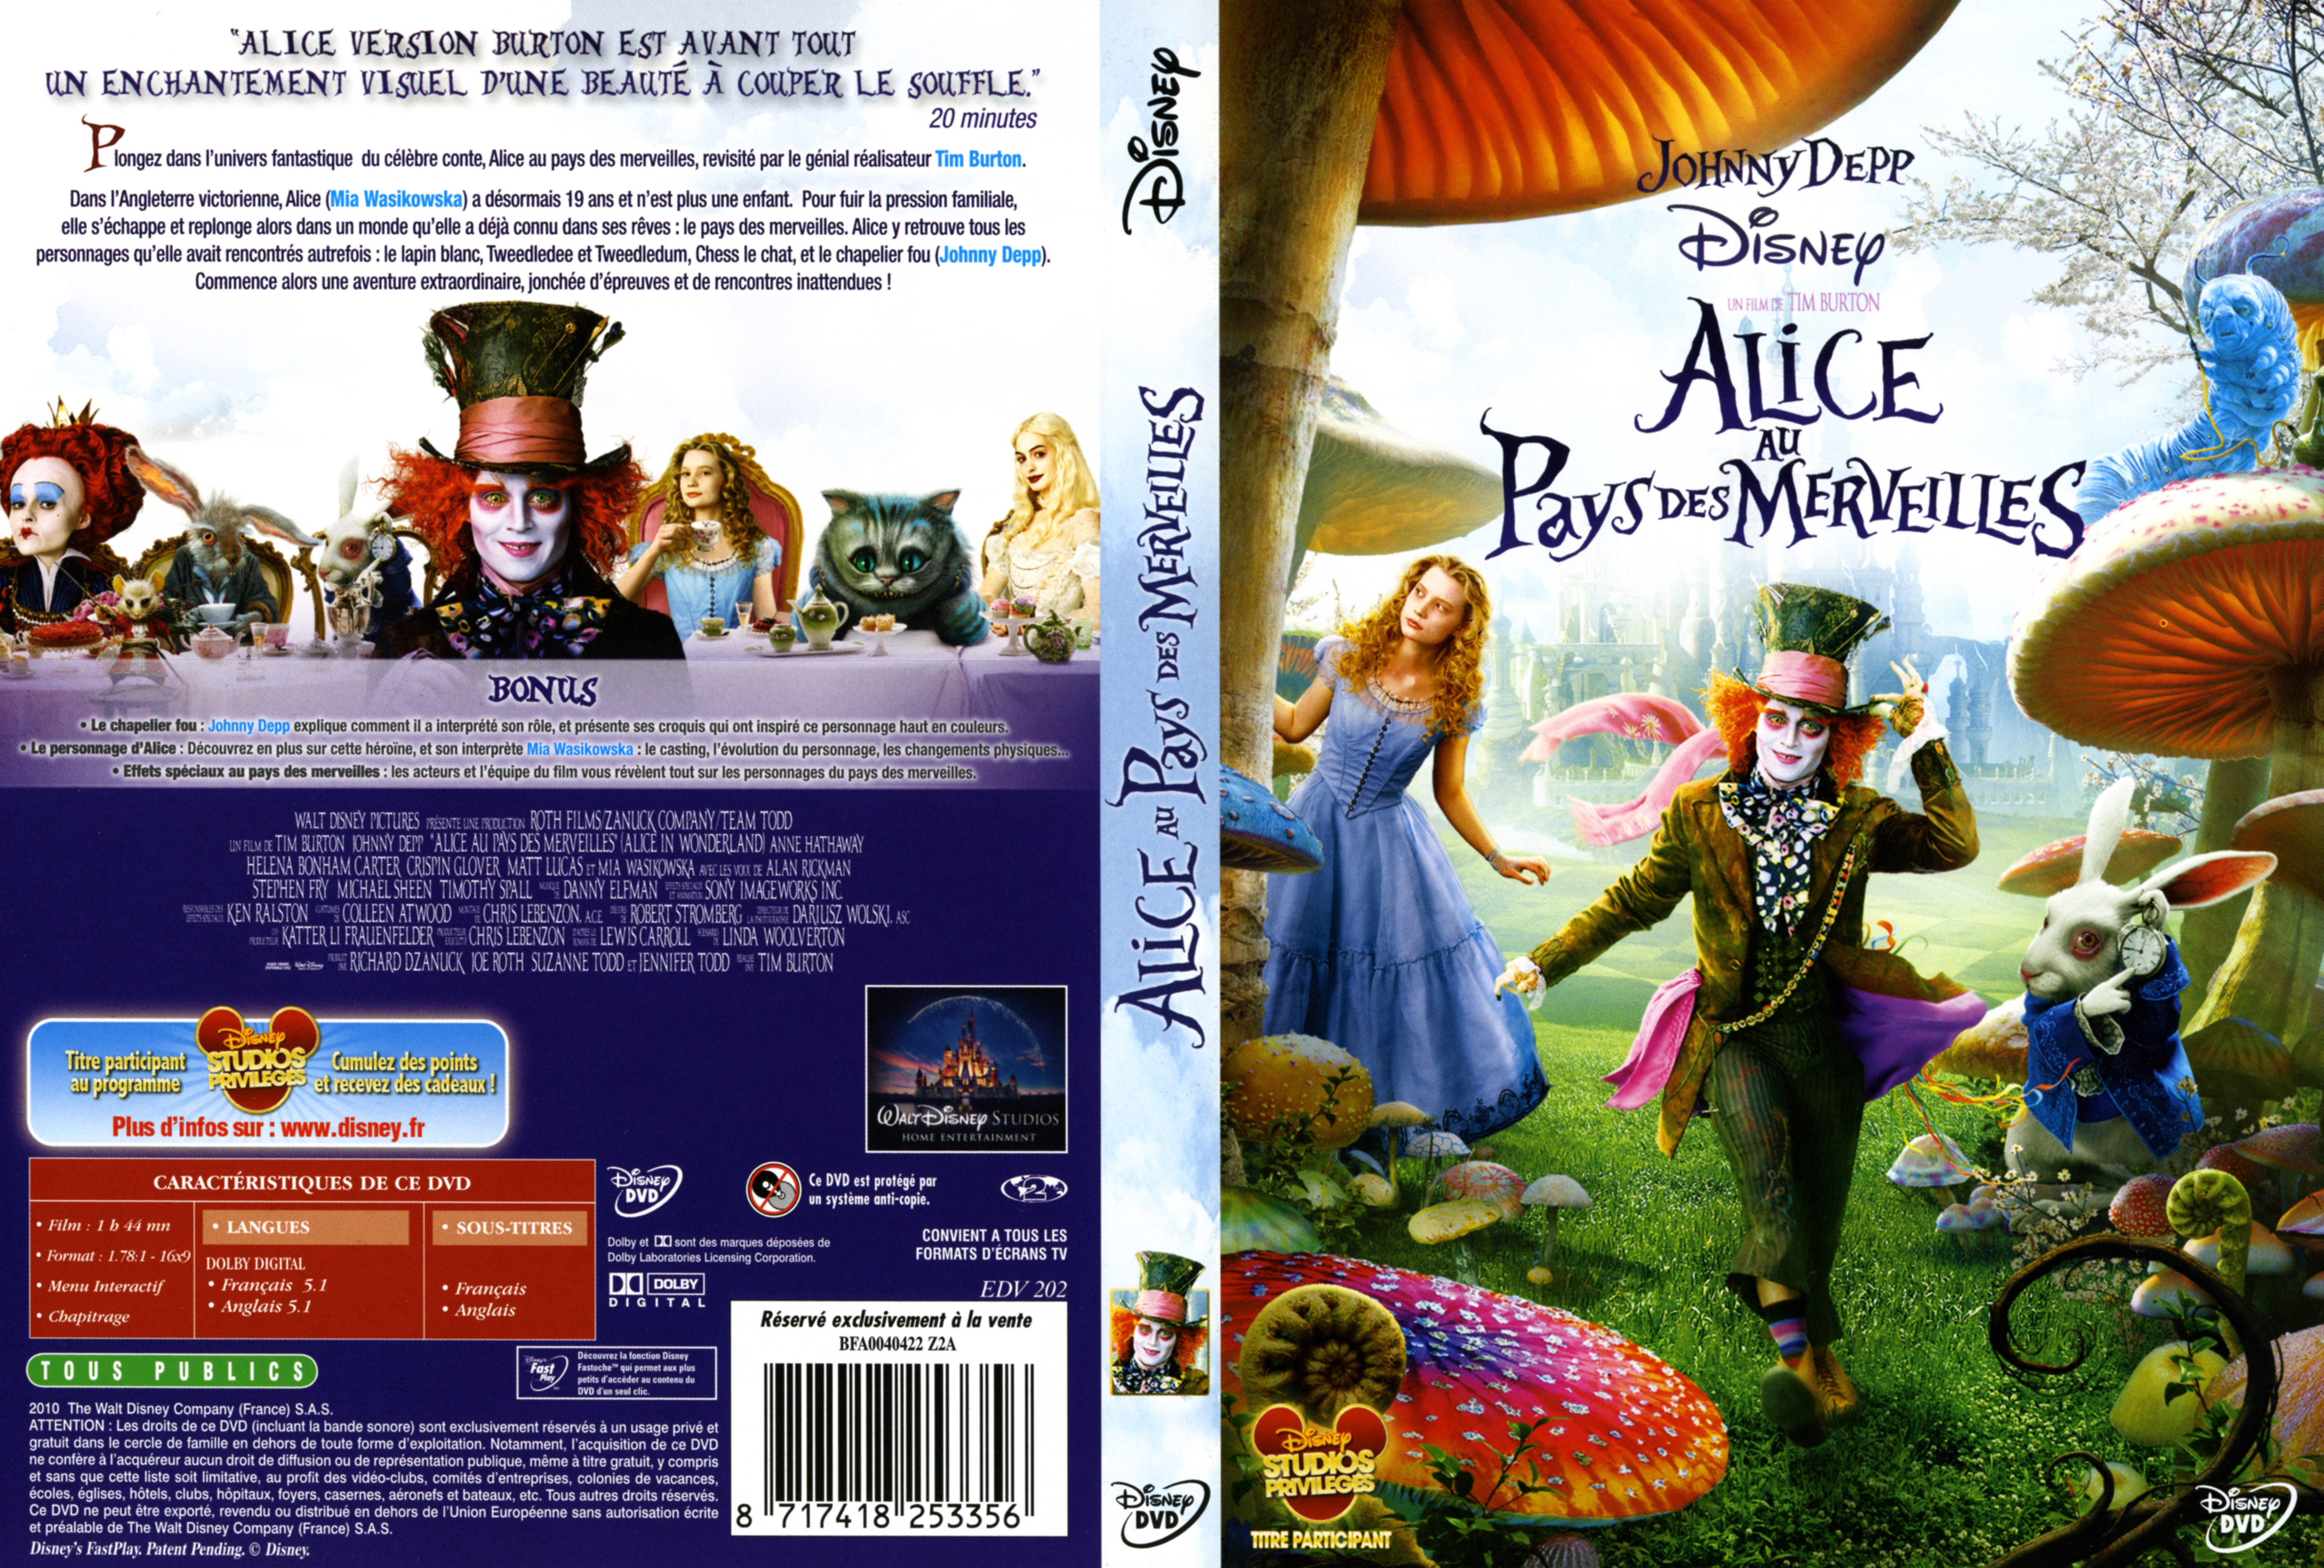 Jaquette DVD Alice au pays des merveilles (Tim Burton) v2